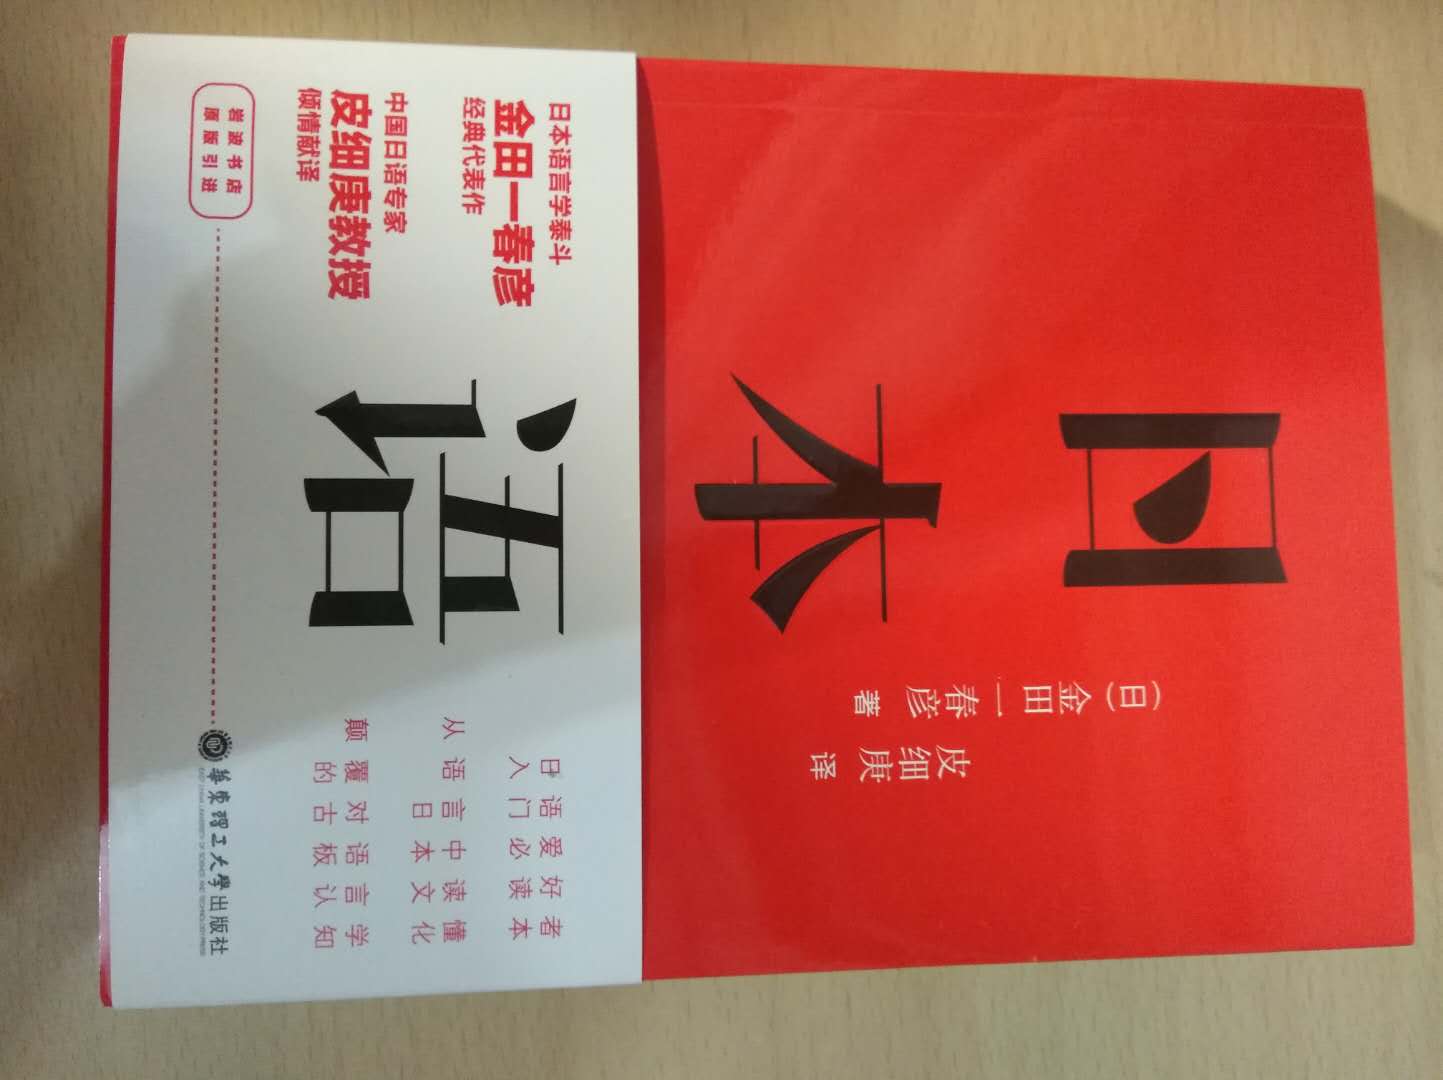 语言类的入门级书籍，可以说是一本教材，对日语感兴趣的无妨读读。